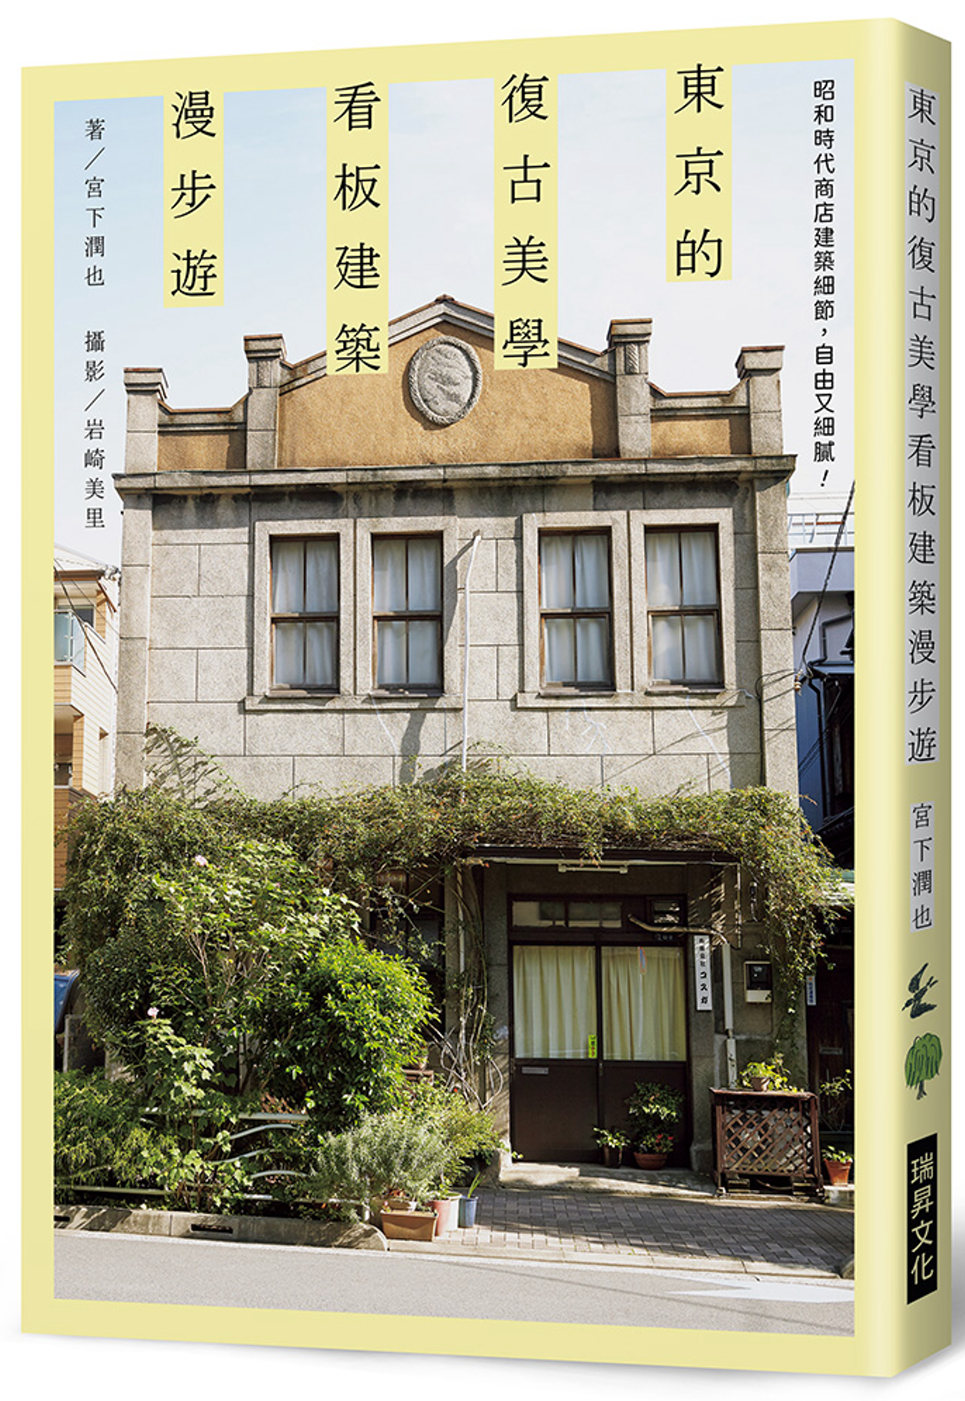 東京的復古美學　看板建築漫步遊：昭和時代商店建築細節，自由又...